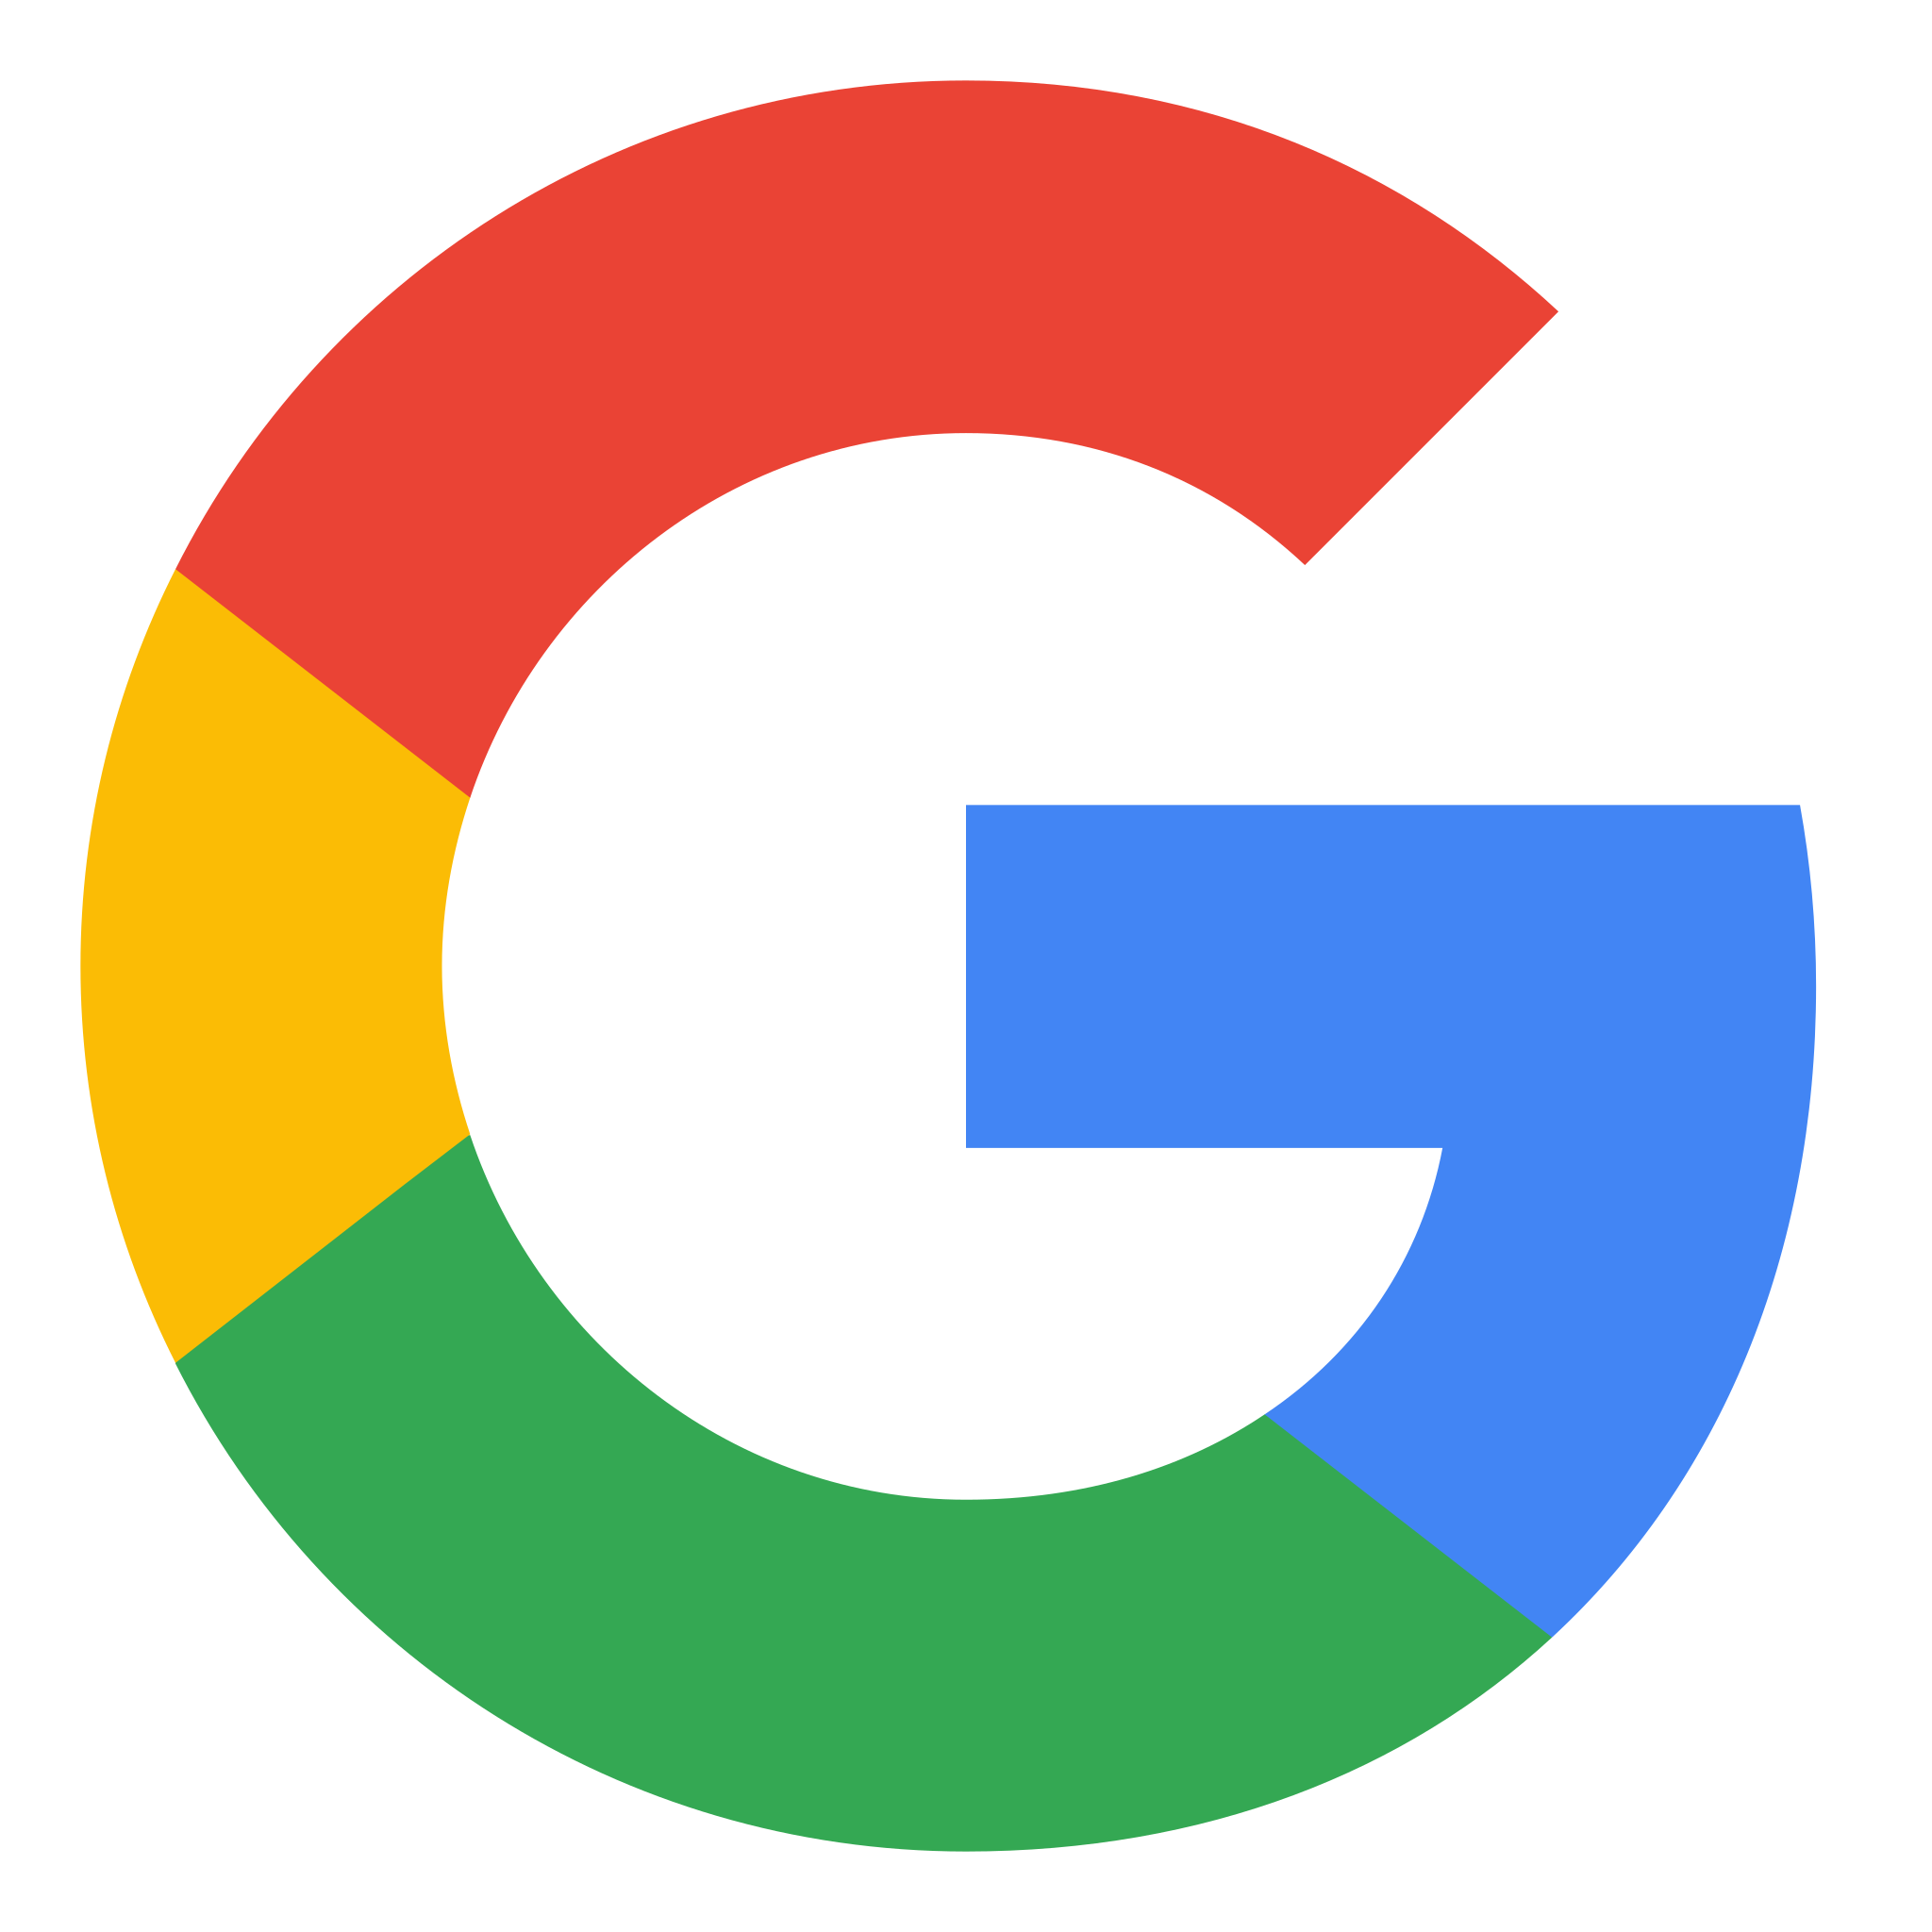 Das Google-Logo mit den Farben Rot, Gelb, Grün und Blau wird verwendet, um zu zeigen, dass SUNZINET eine von Google zertifizierte digitale Marketing-Agentur ist.